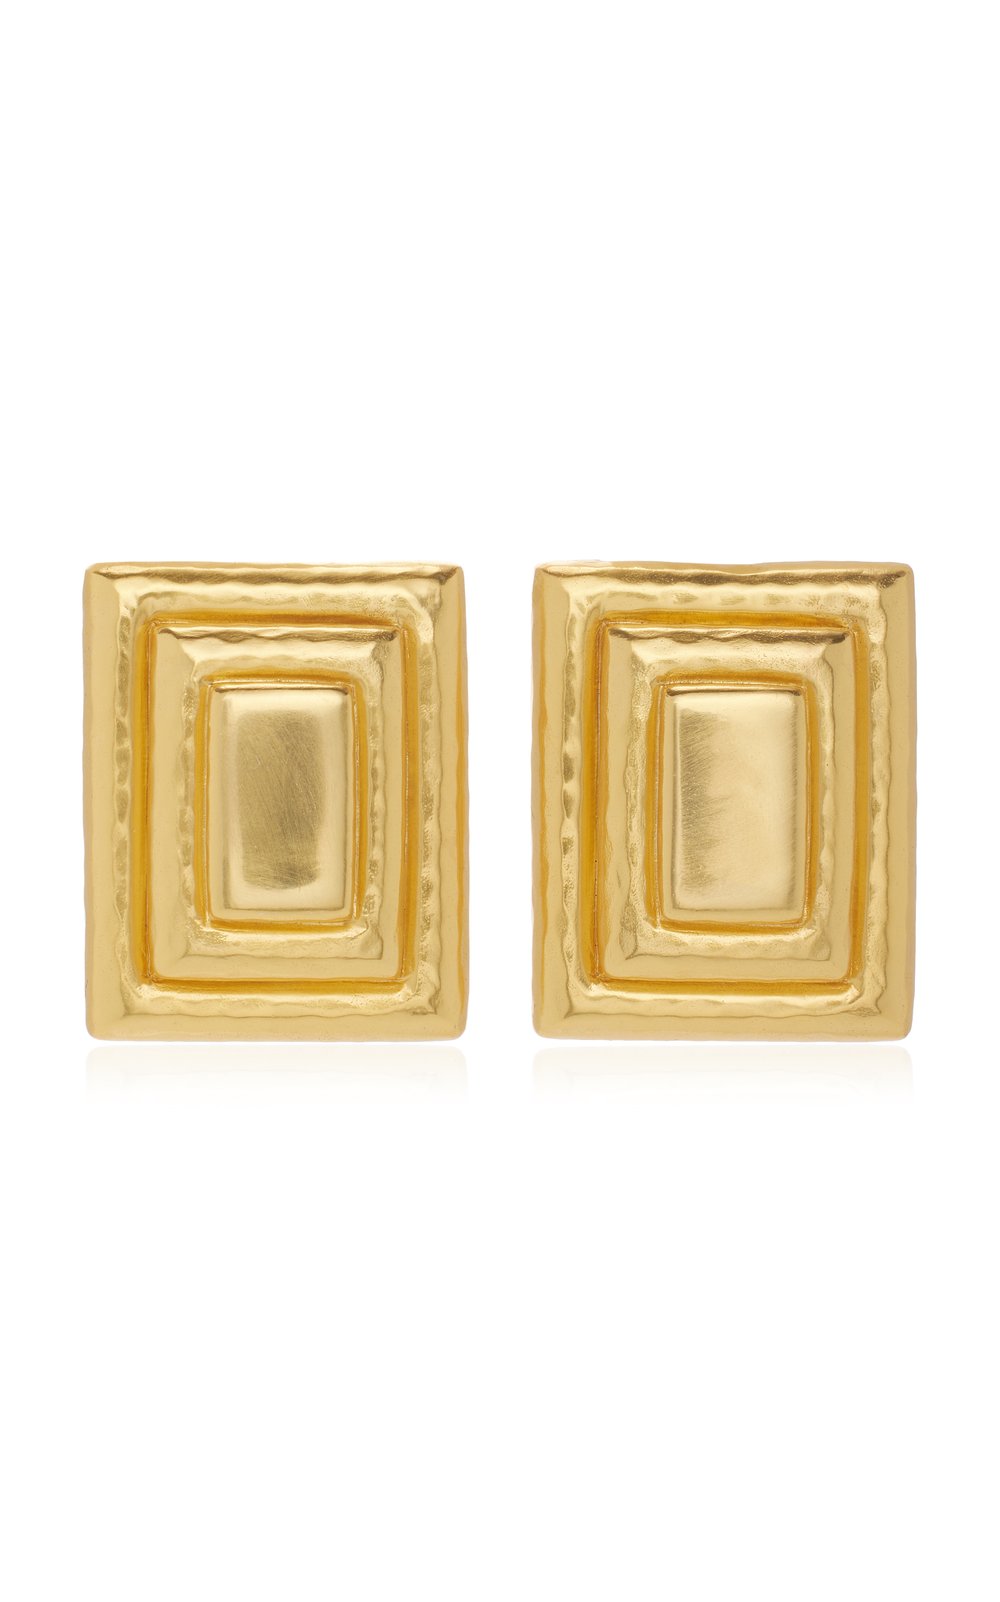 valere-gold-hailey-earrings.jpg